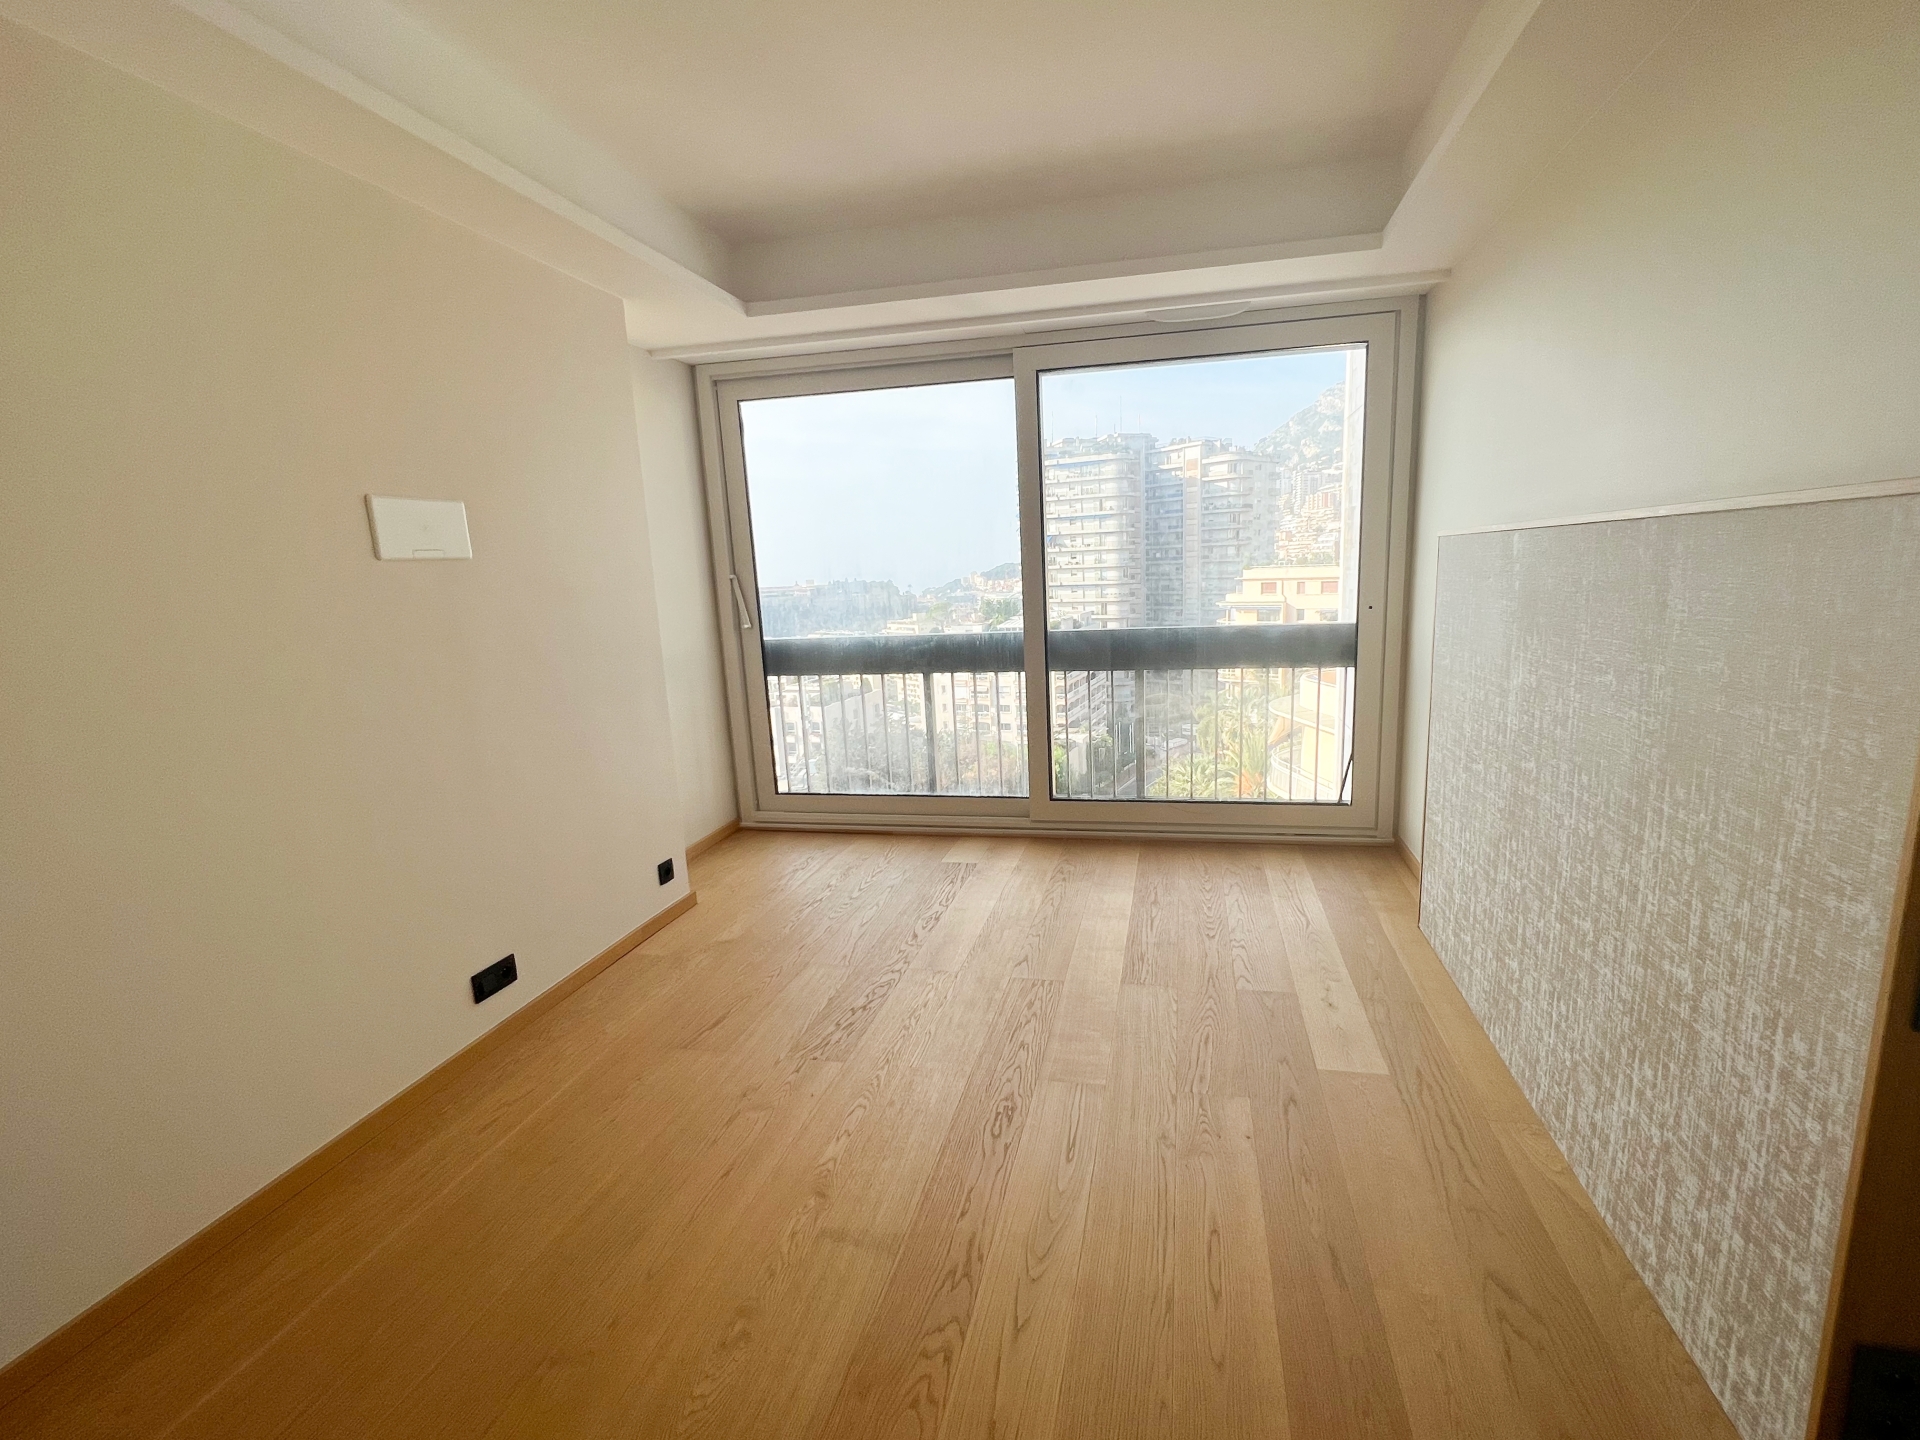 Dotta Appartement de 3 pieces a vendre - PARK PALACE - Monte-Carlo - Monaco - img3